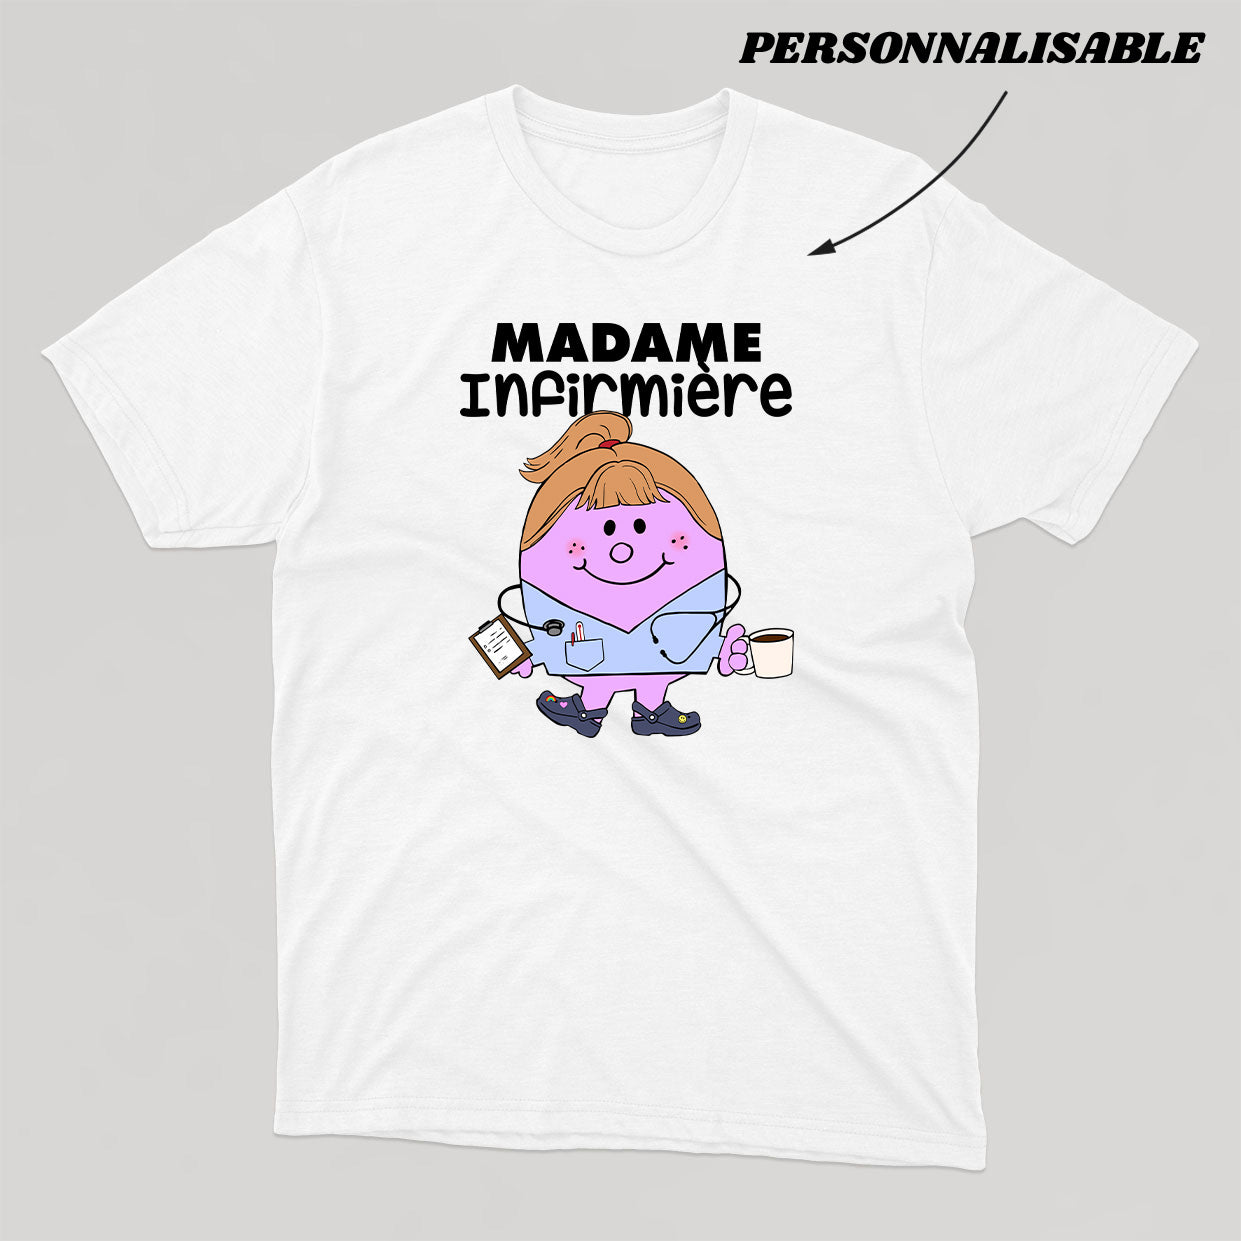 MADAME *PERSONNEL DE LA SANTÉ* t-shirt unisexe personnalisable - tamelo boutique